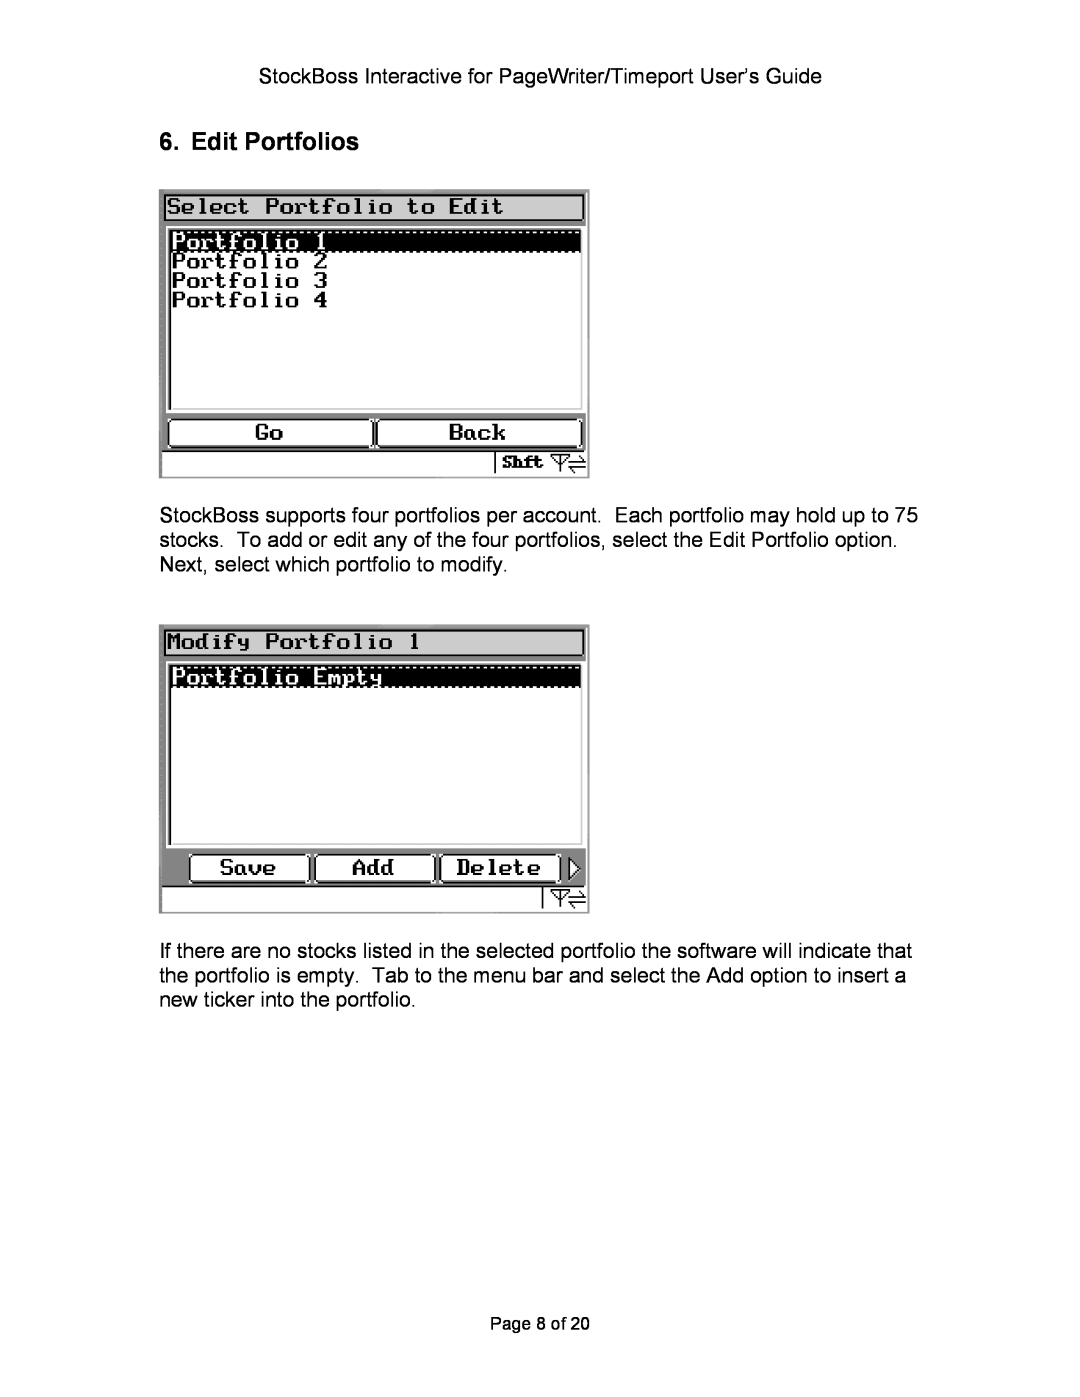 Motorola P930 Series manual Edit Portfolios, Page 8 of 